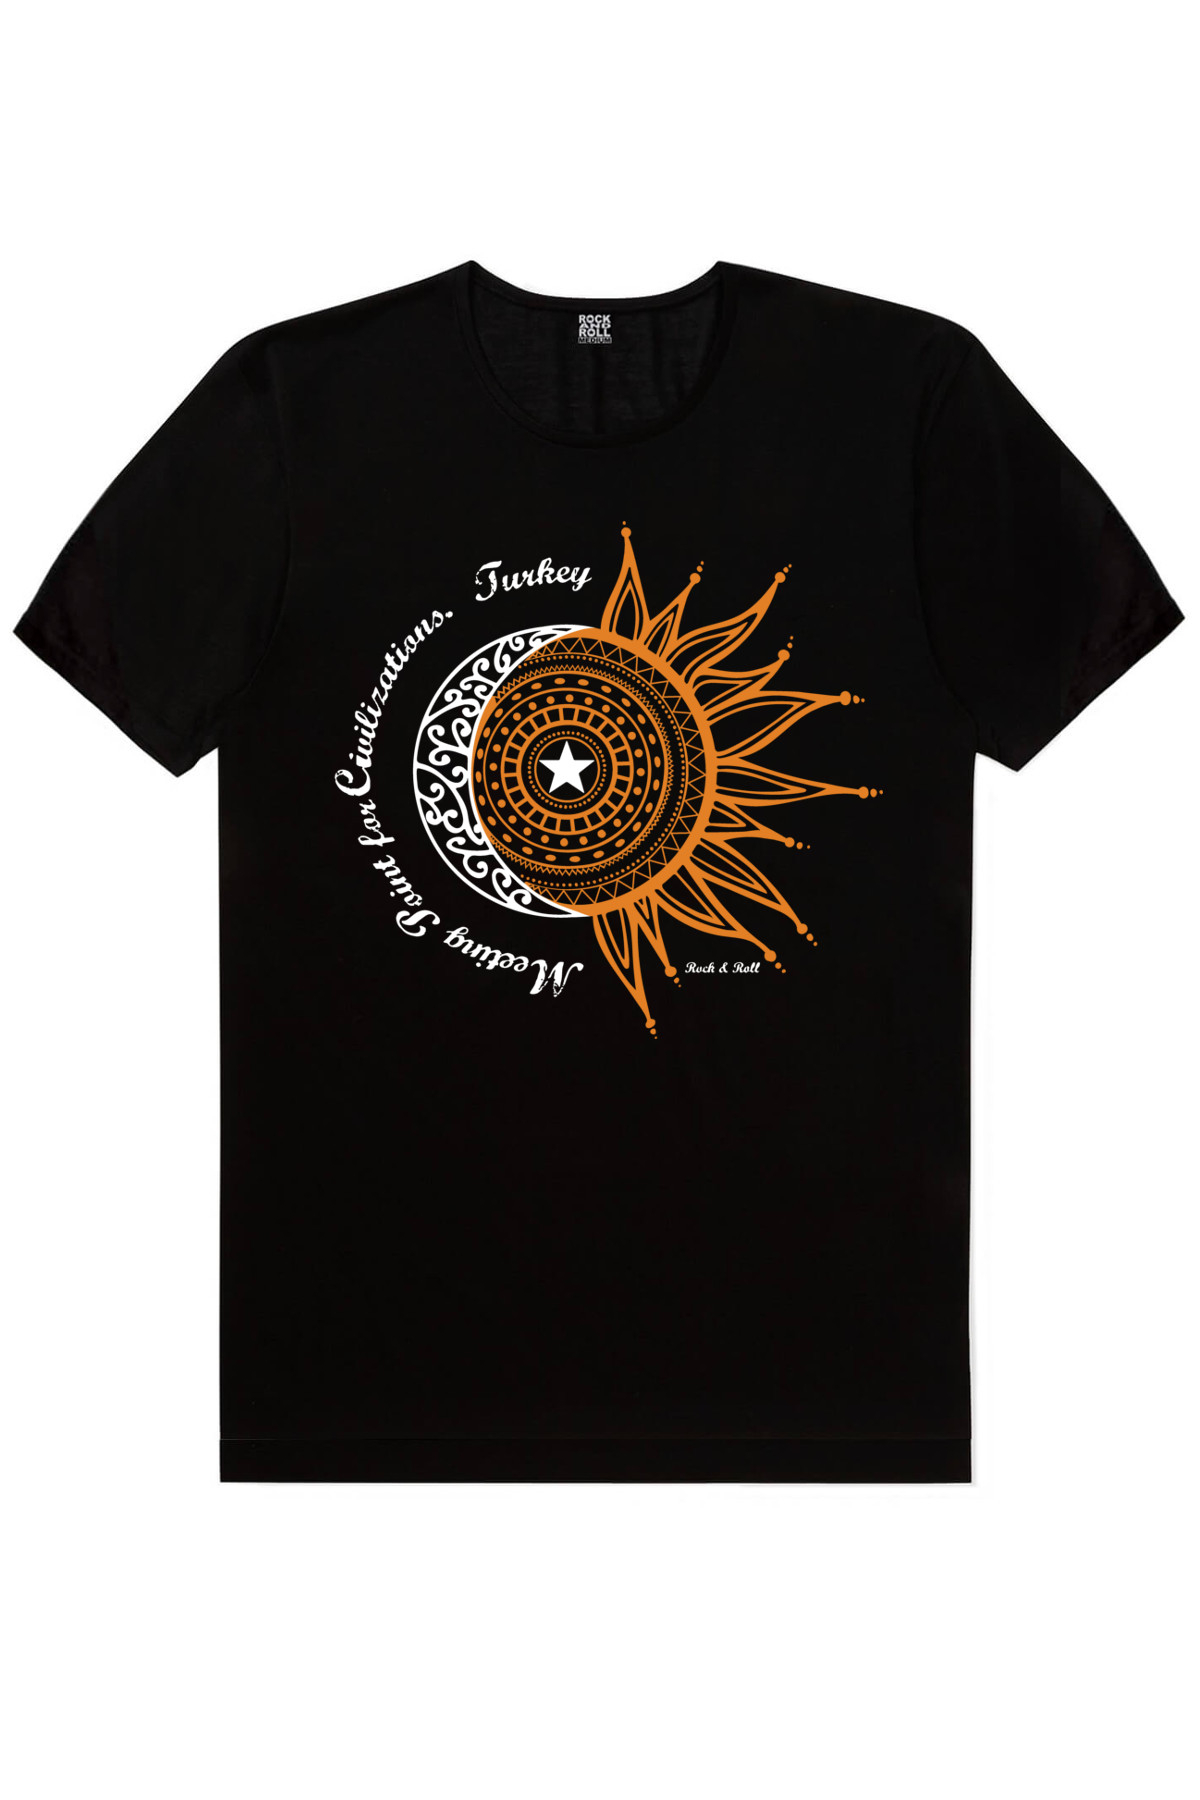 Güneşli Türkiye, Türkiye Ay Yıldız Siyah Çocuk Tişört 2'li Eko Paket